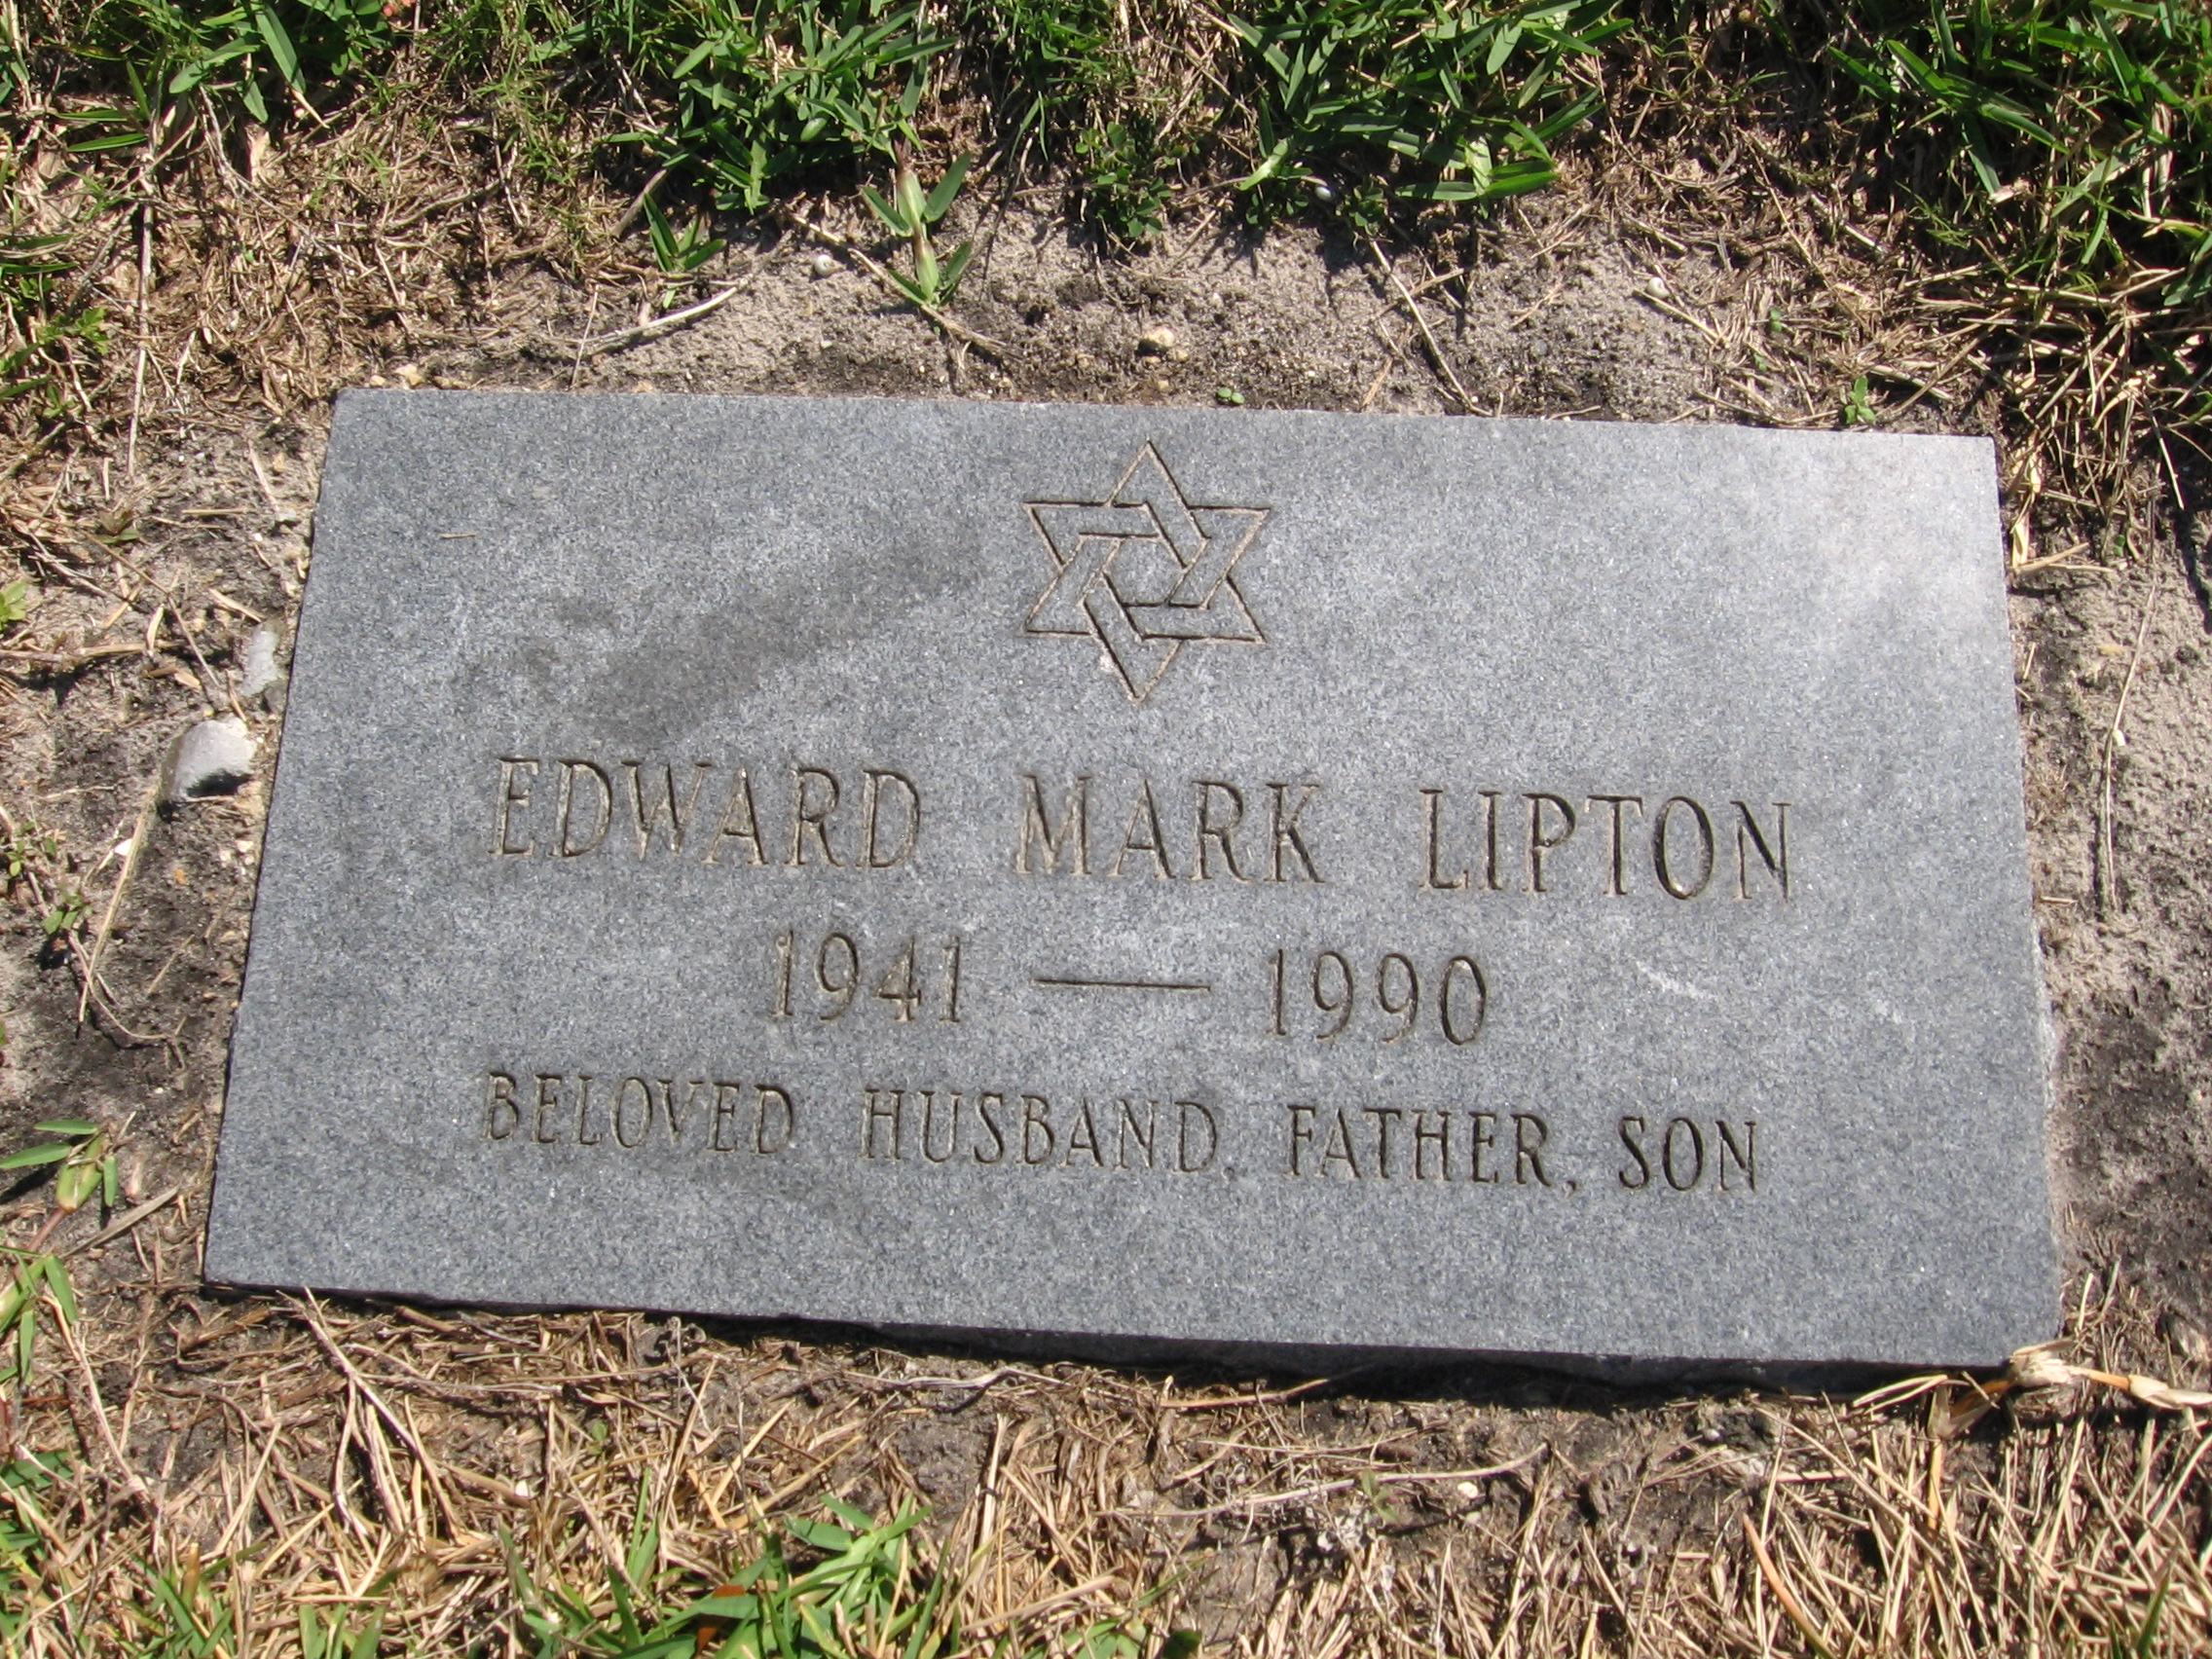 Edward Mark Lipton